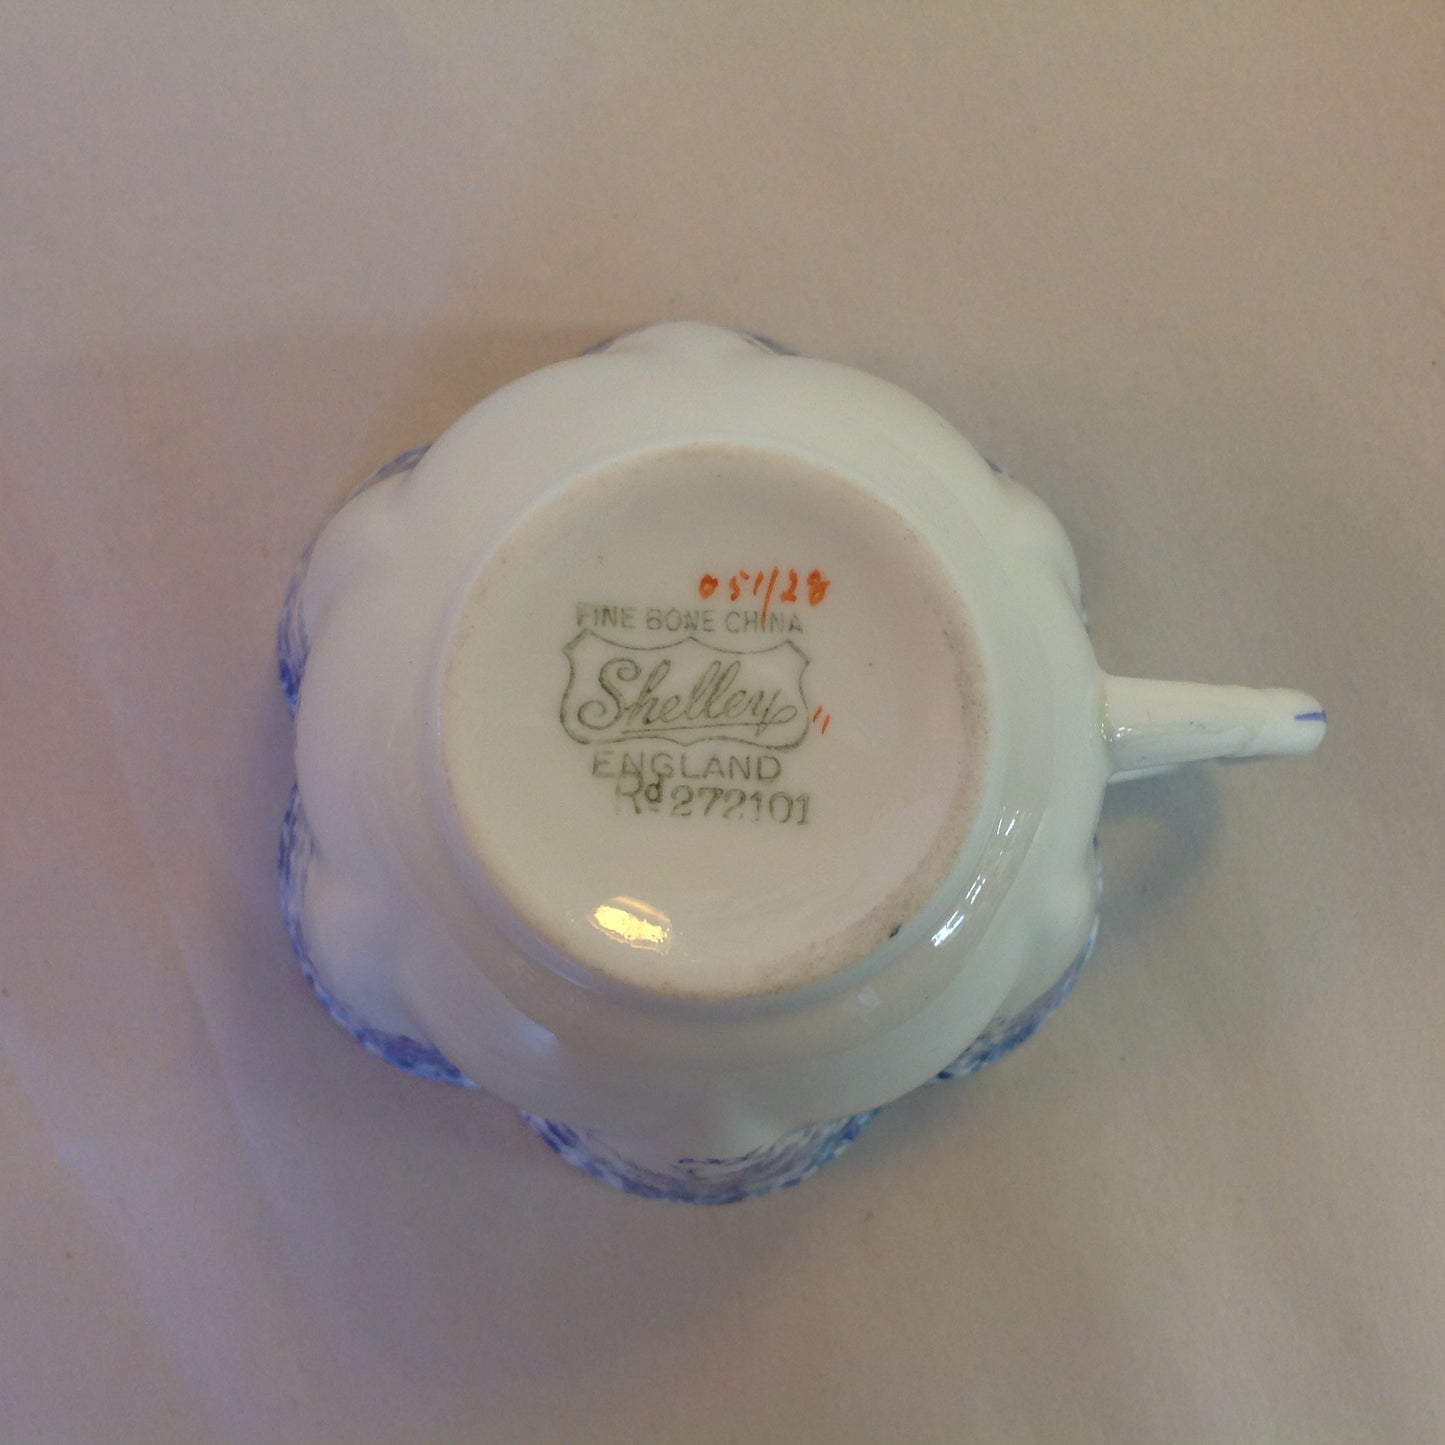 Antique Shelley Dainty Blue 2 Piece Tea Set Cup Tennis Plate